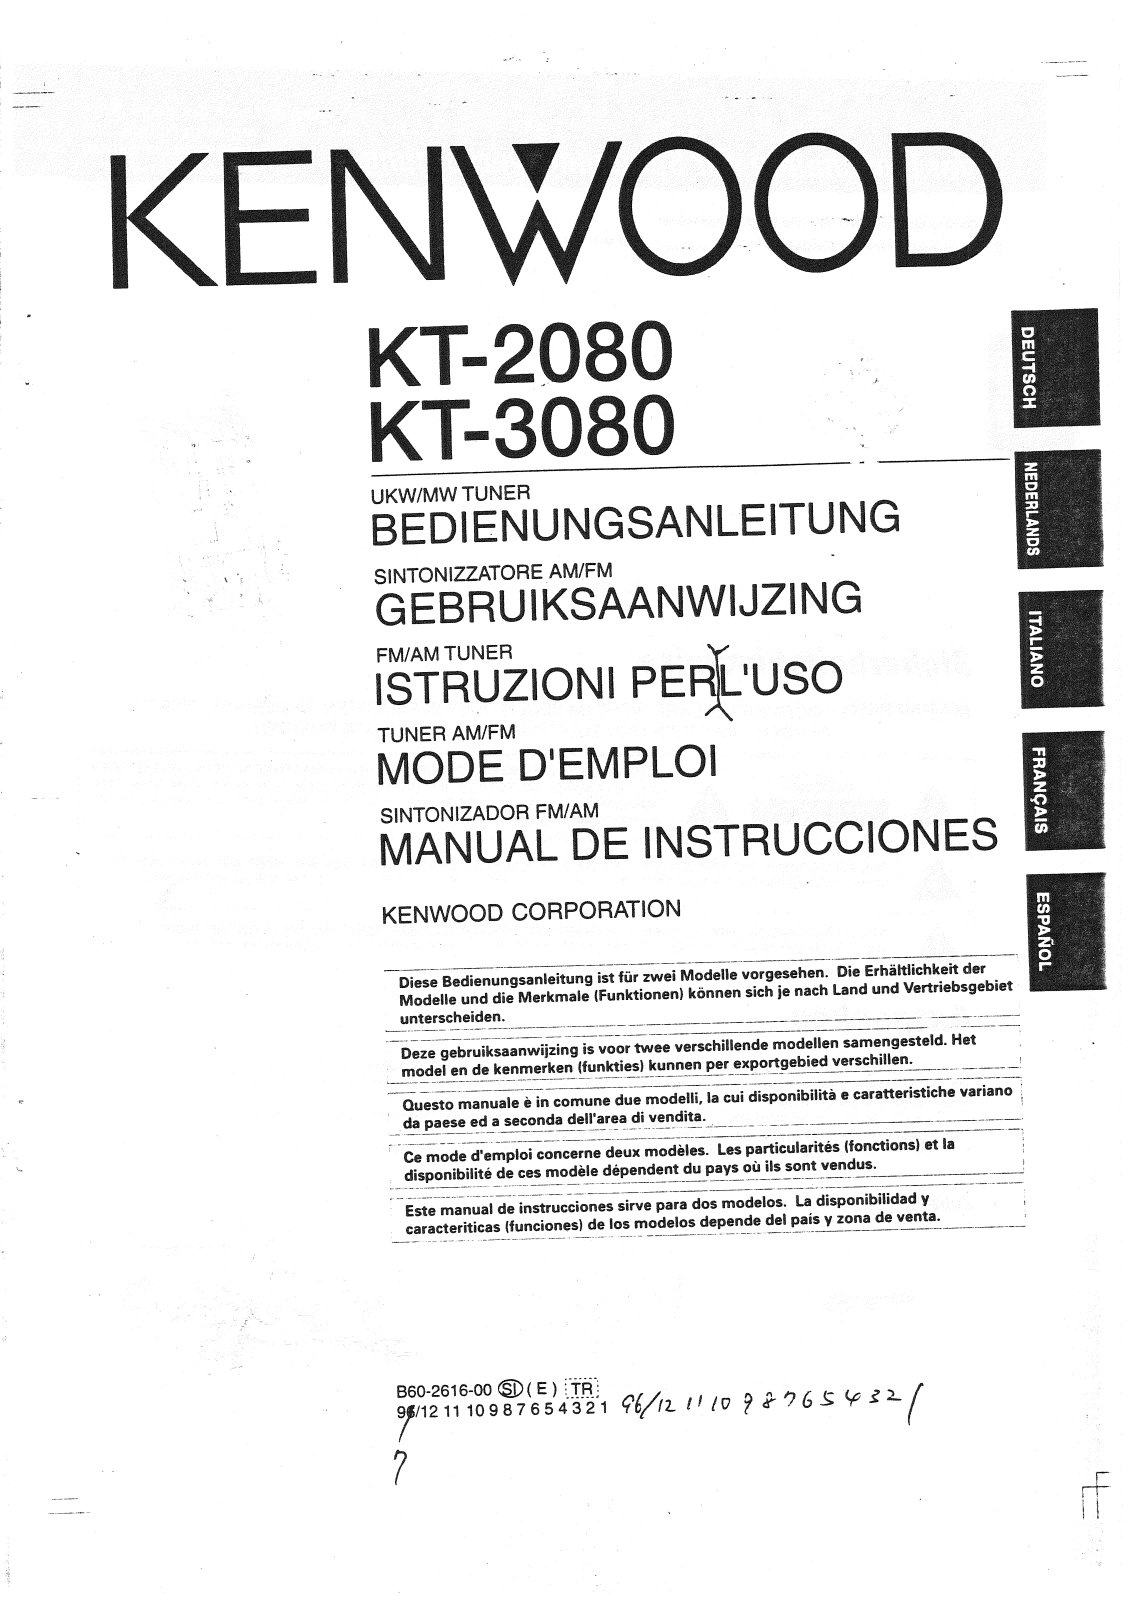 Kenwood KT-3080, KT-2080 Manual